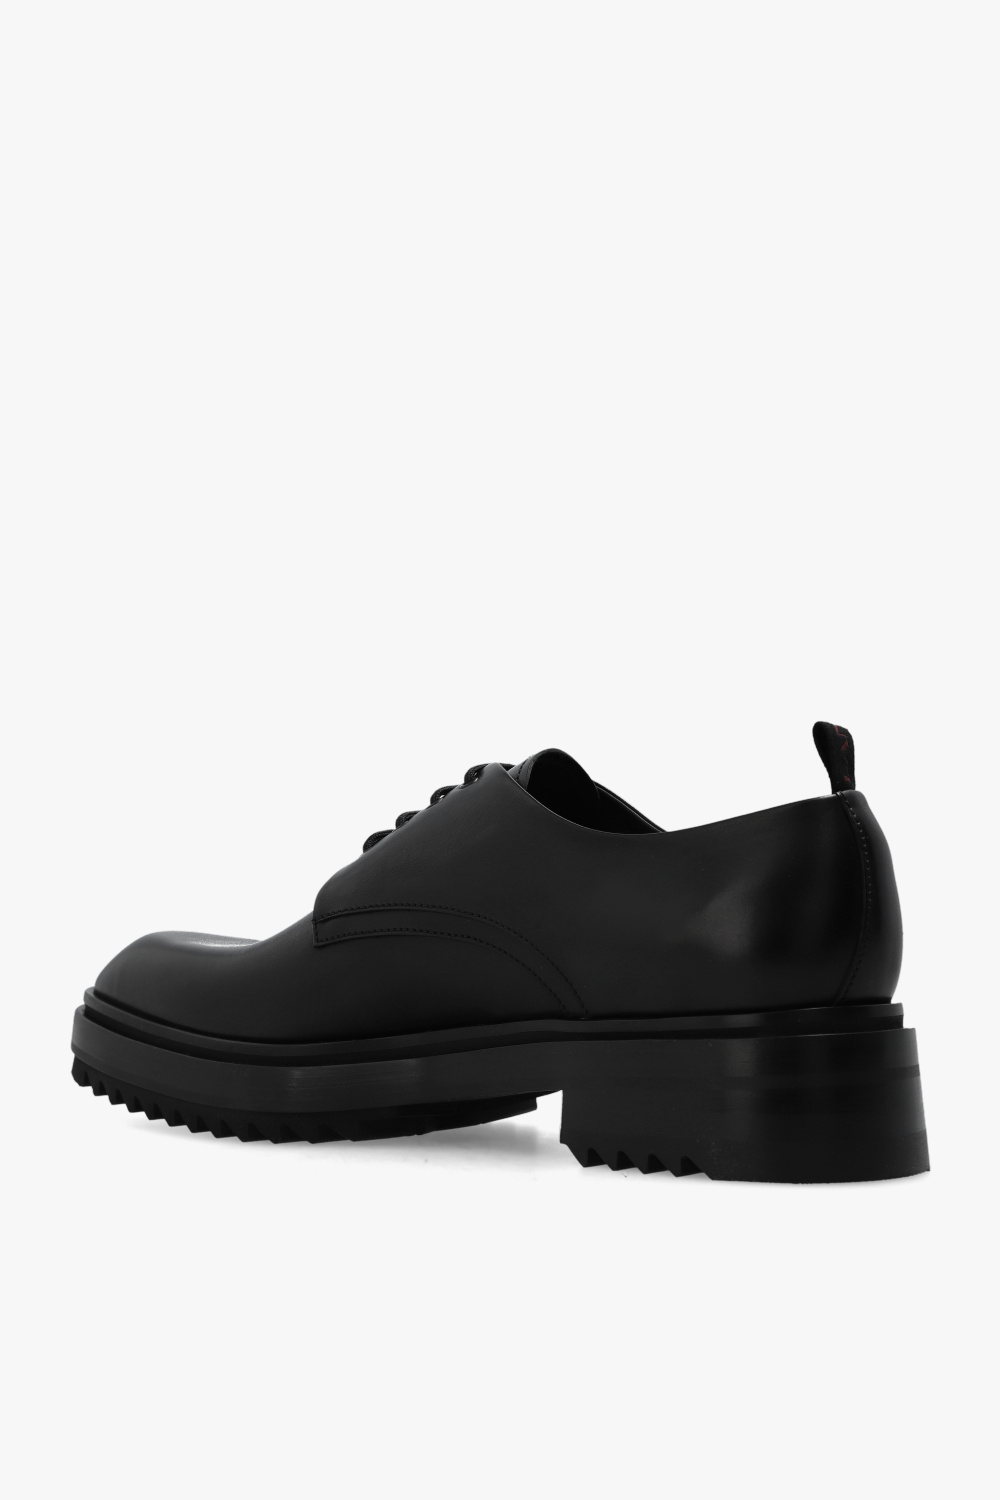 Lanvin ‘Alto’ Derby shoes